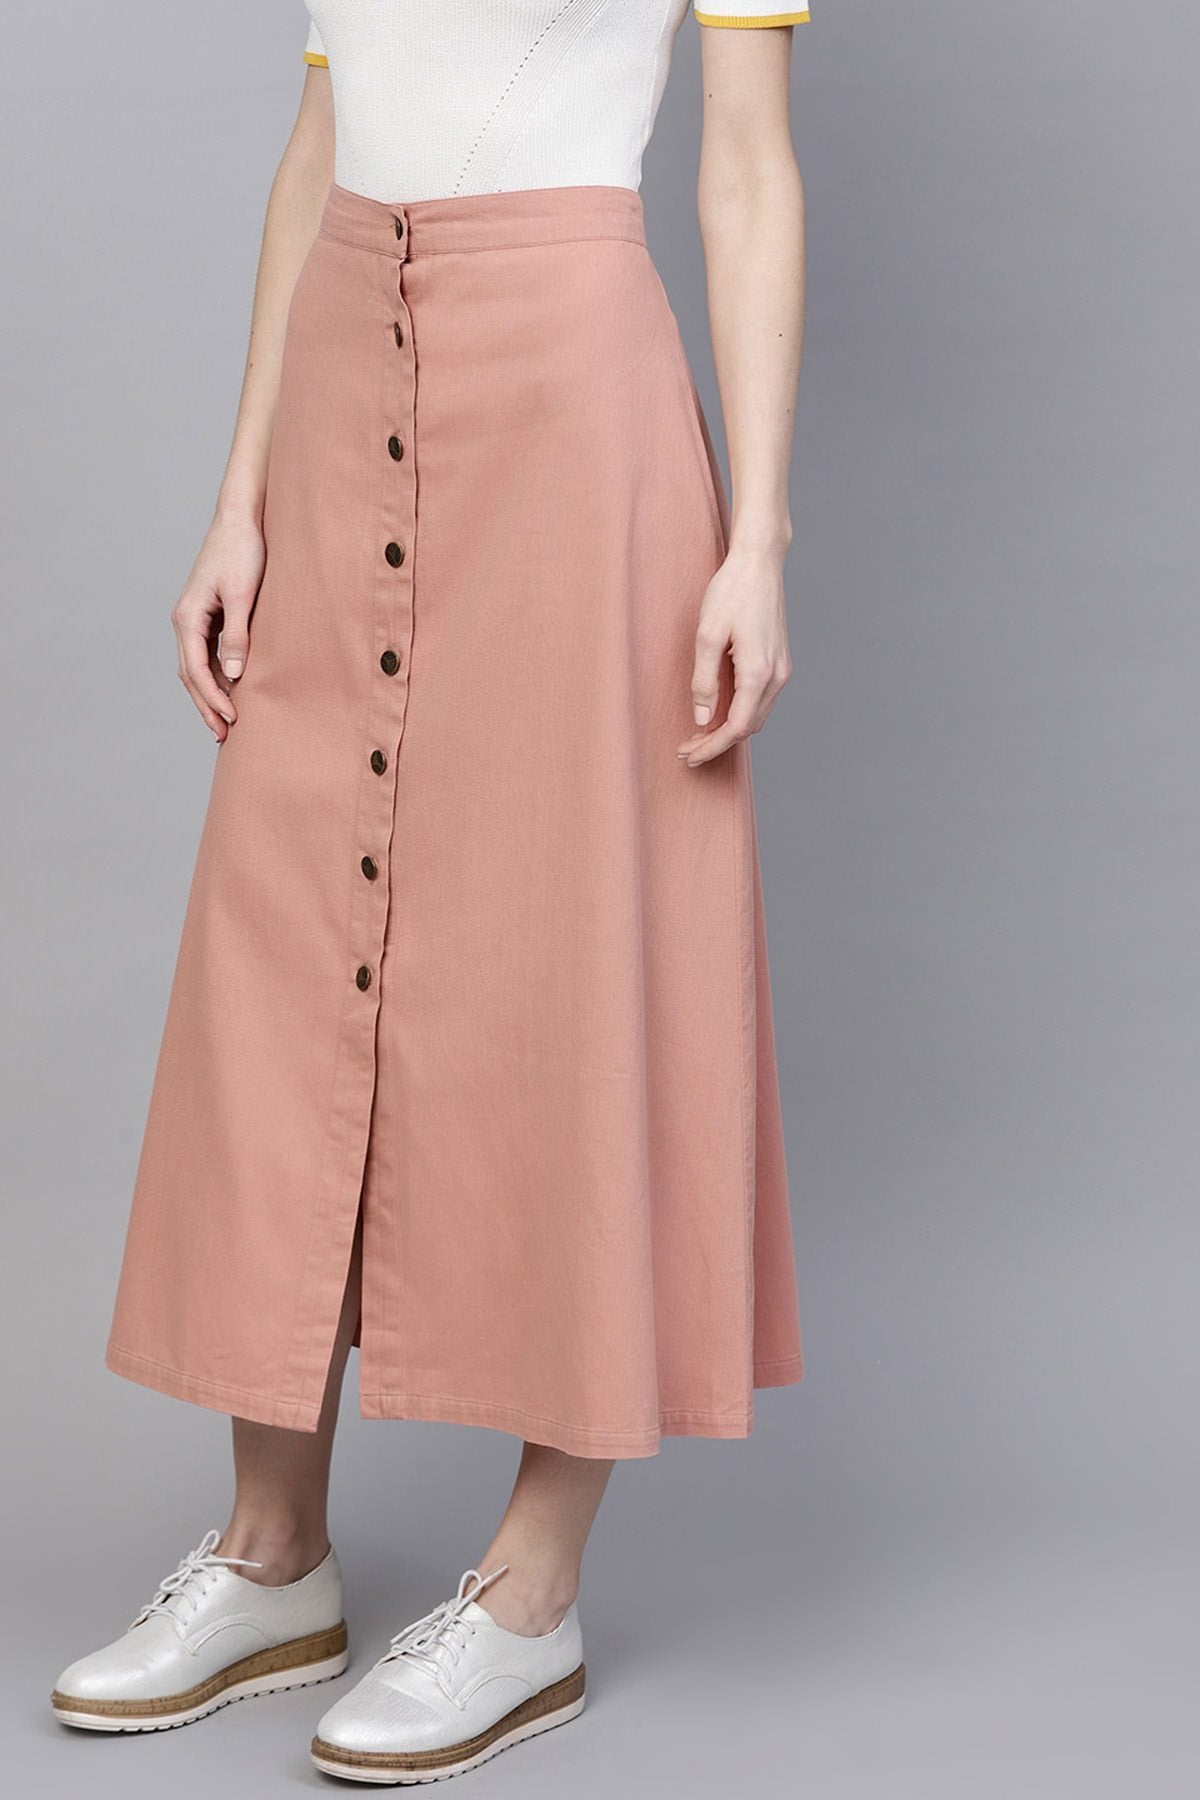 Women's Pink Denim Longline Buttoned Skirt - SASSAFRAS